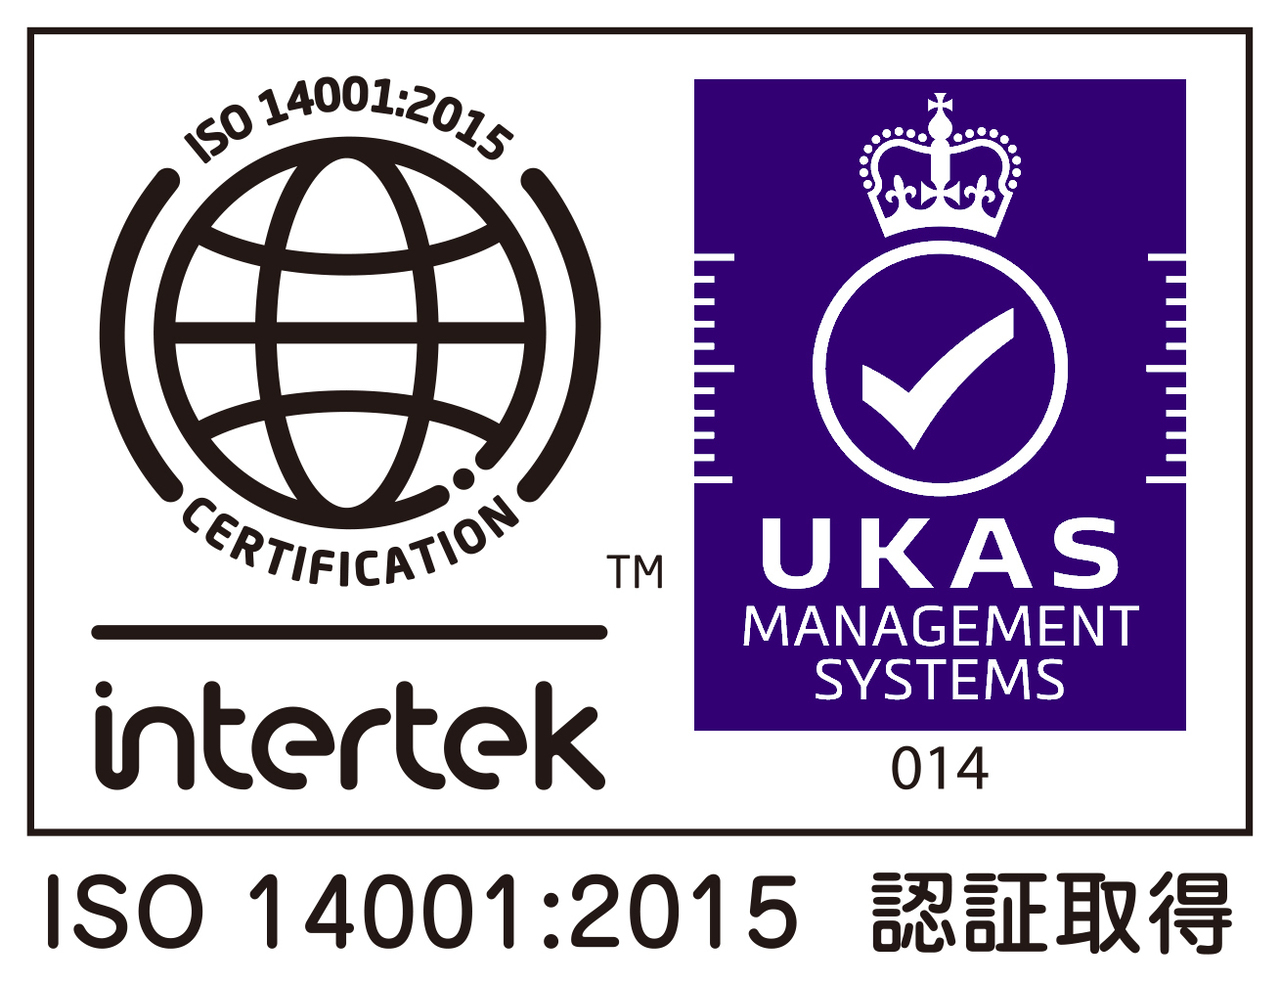 ISO14001-UKAS-014 color2(JPG).jpg